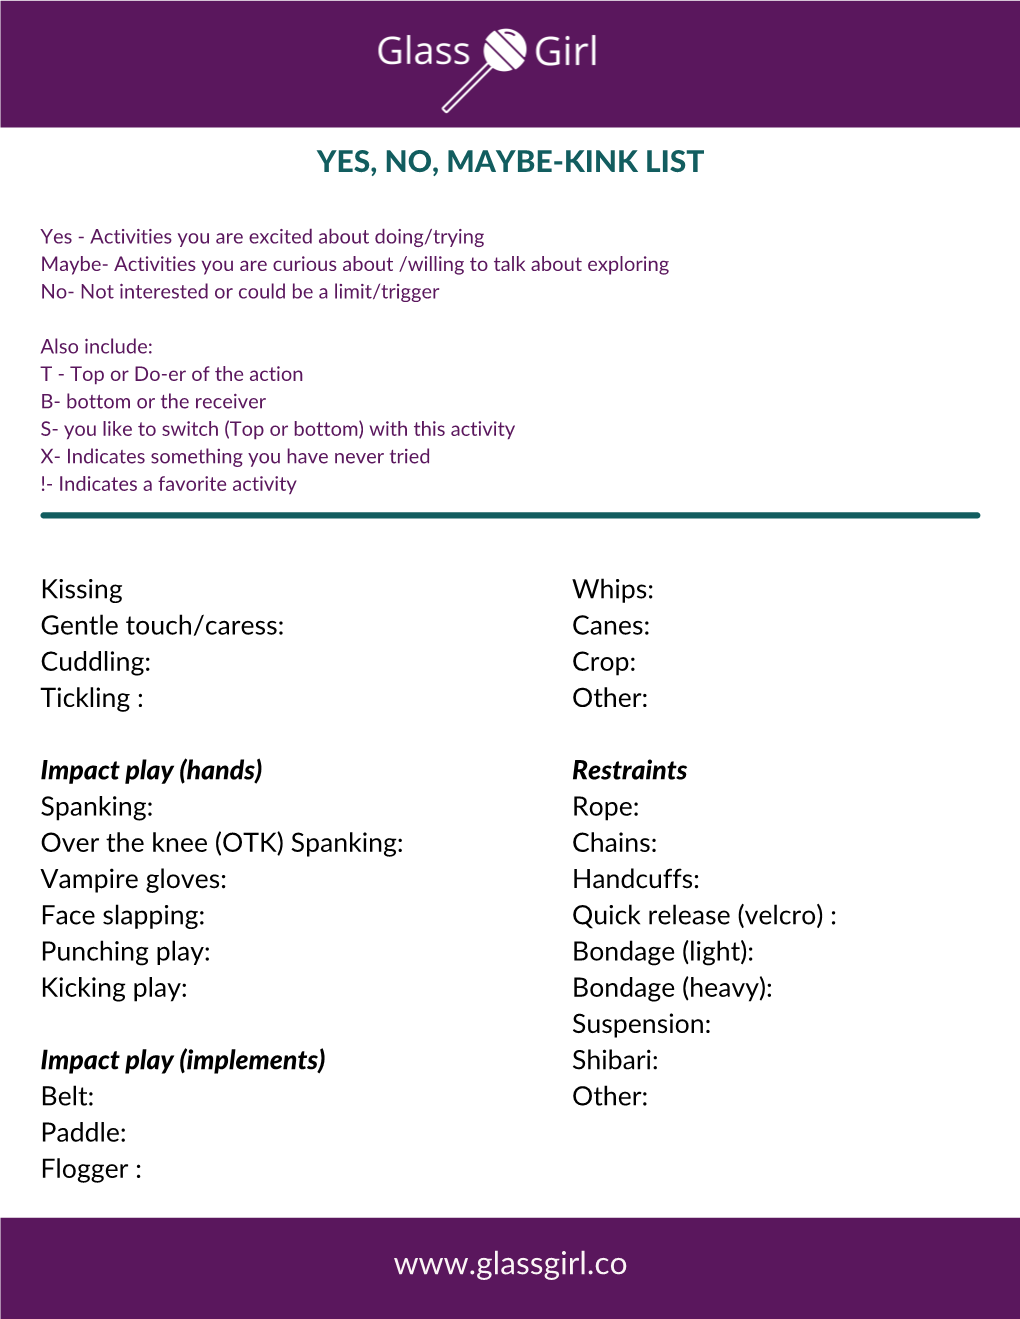 kink checklist for master slave